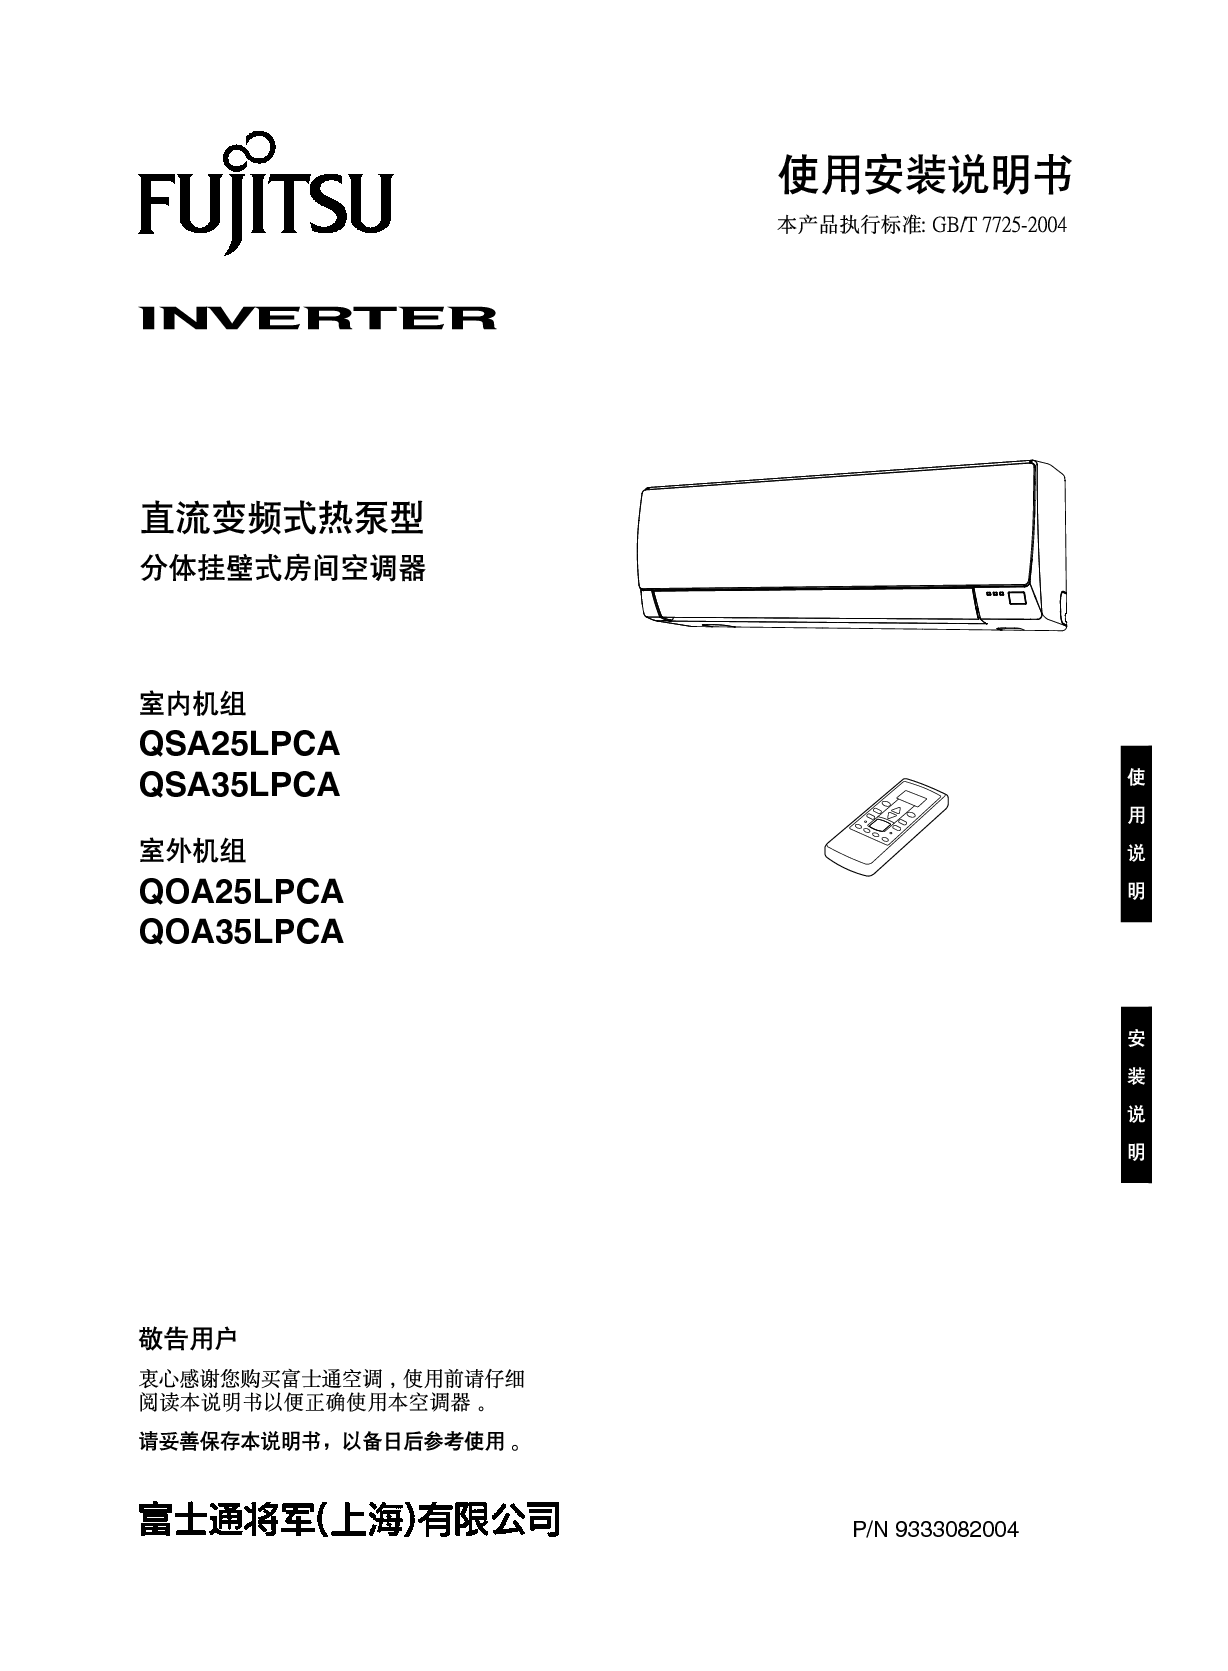 富士通 Fujitsu QOA25LPCA 安装使用说明书 封面